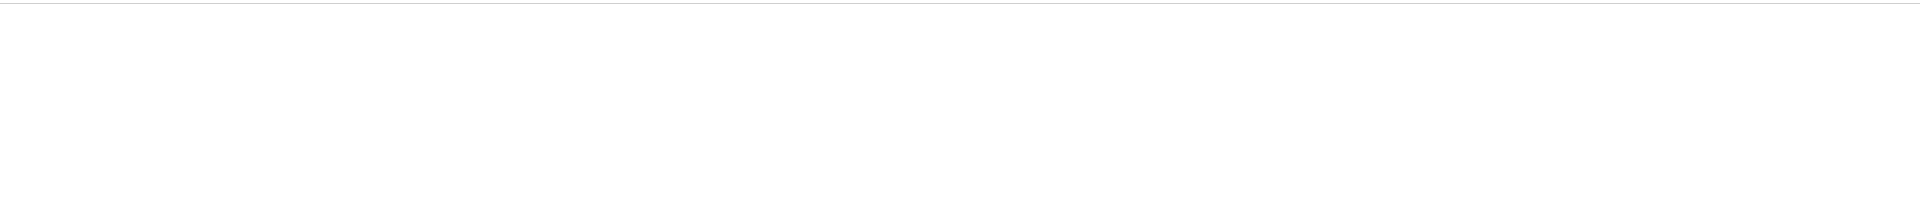 ASRock Logo - Phantom Gaming Alliance